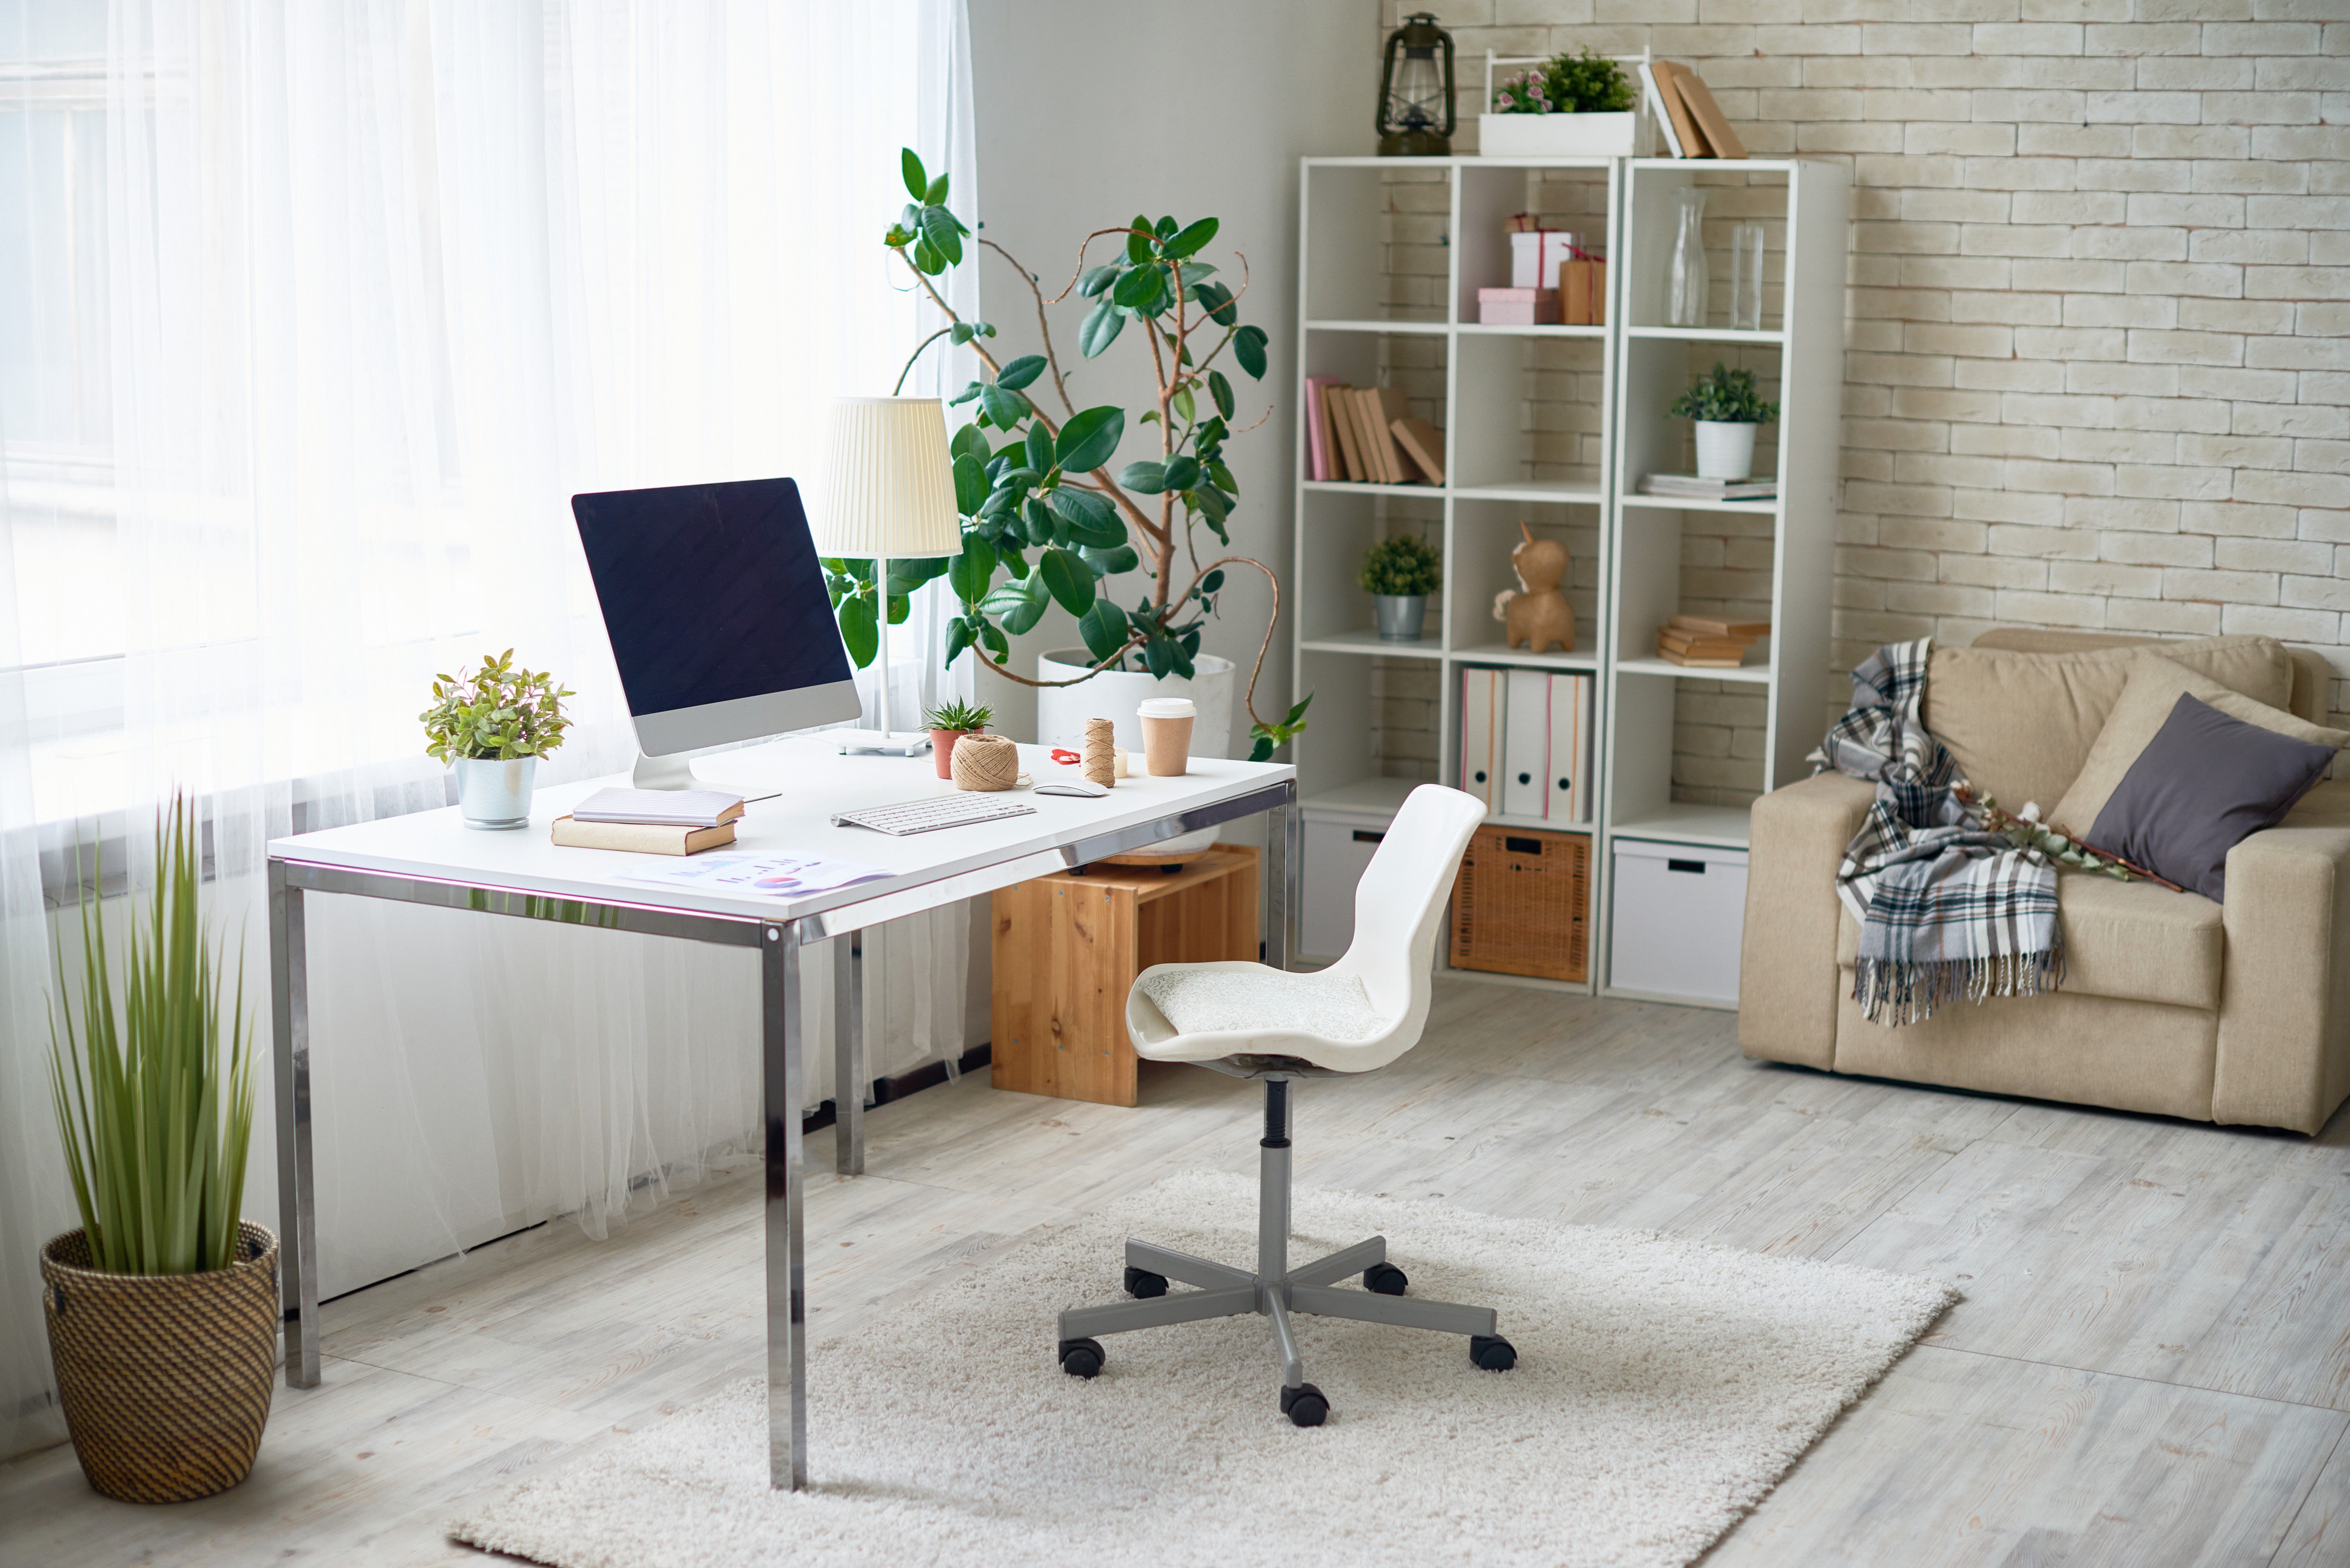 ¿Es recomendable una alfombra para silla de escritorio?